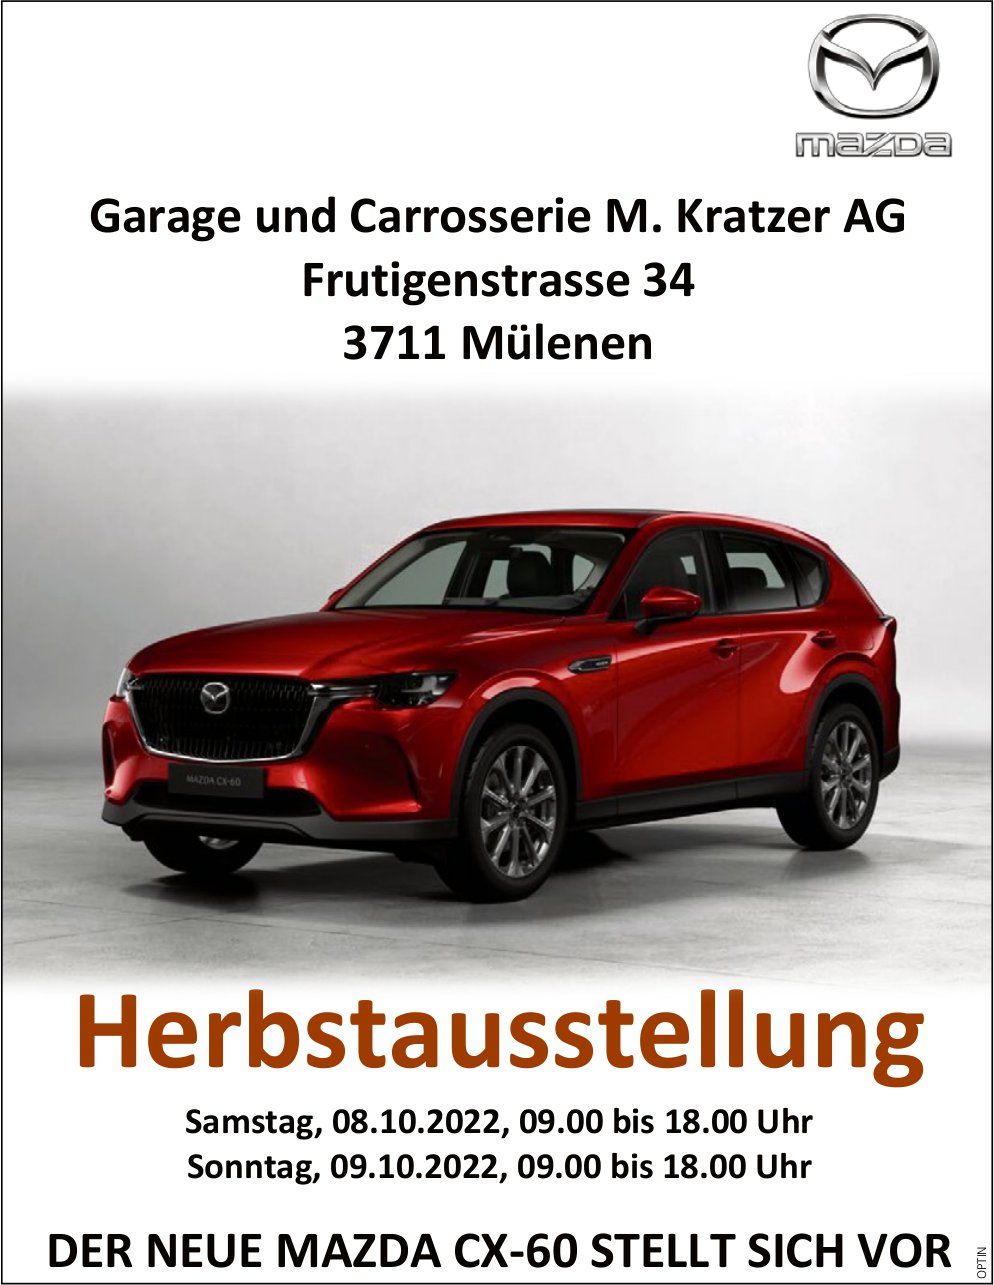 Herbstausstellung, 8. Oktober, Garage und Carrosserie M. Kratzer AG, Mülenen